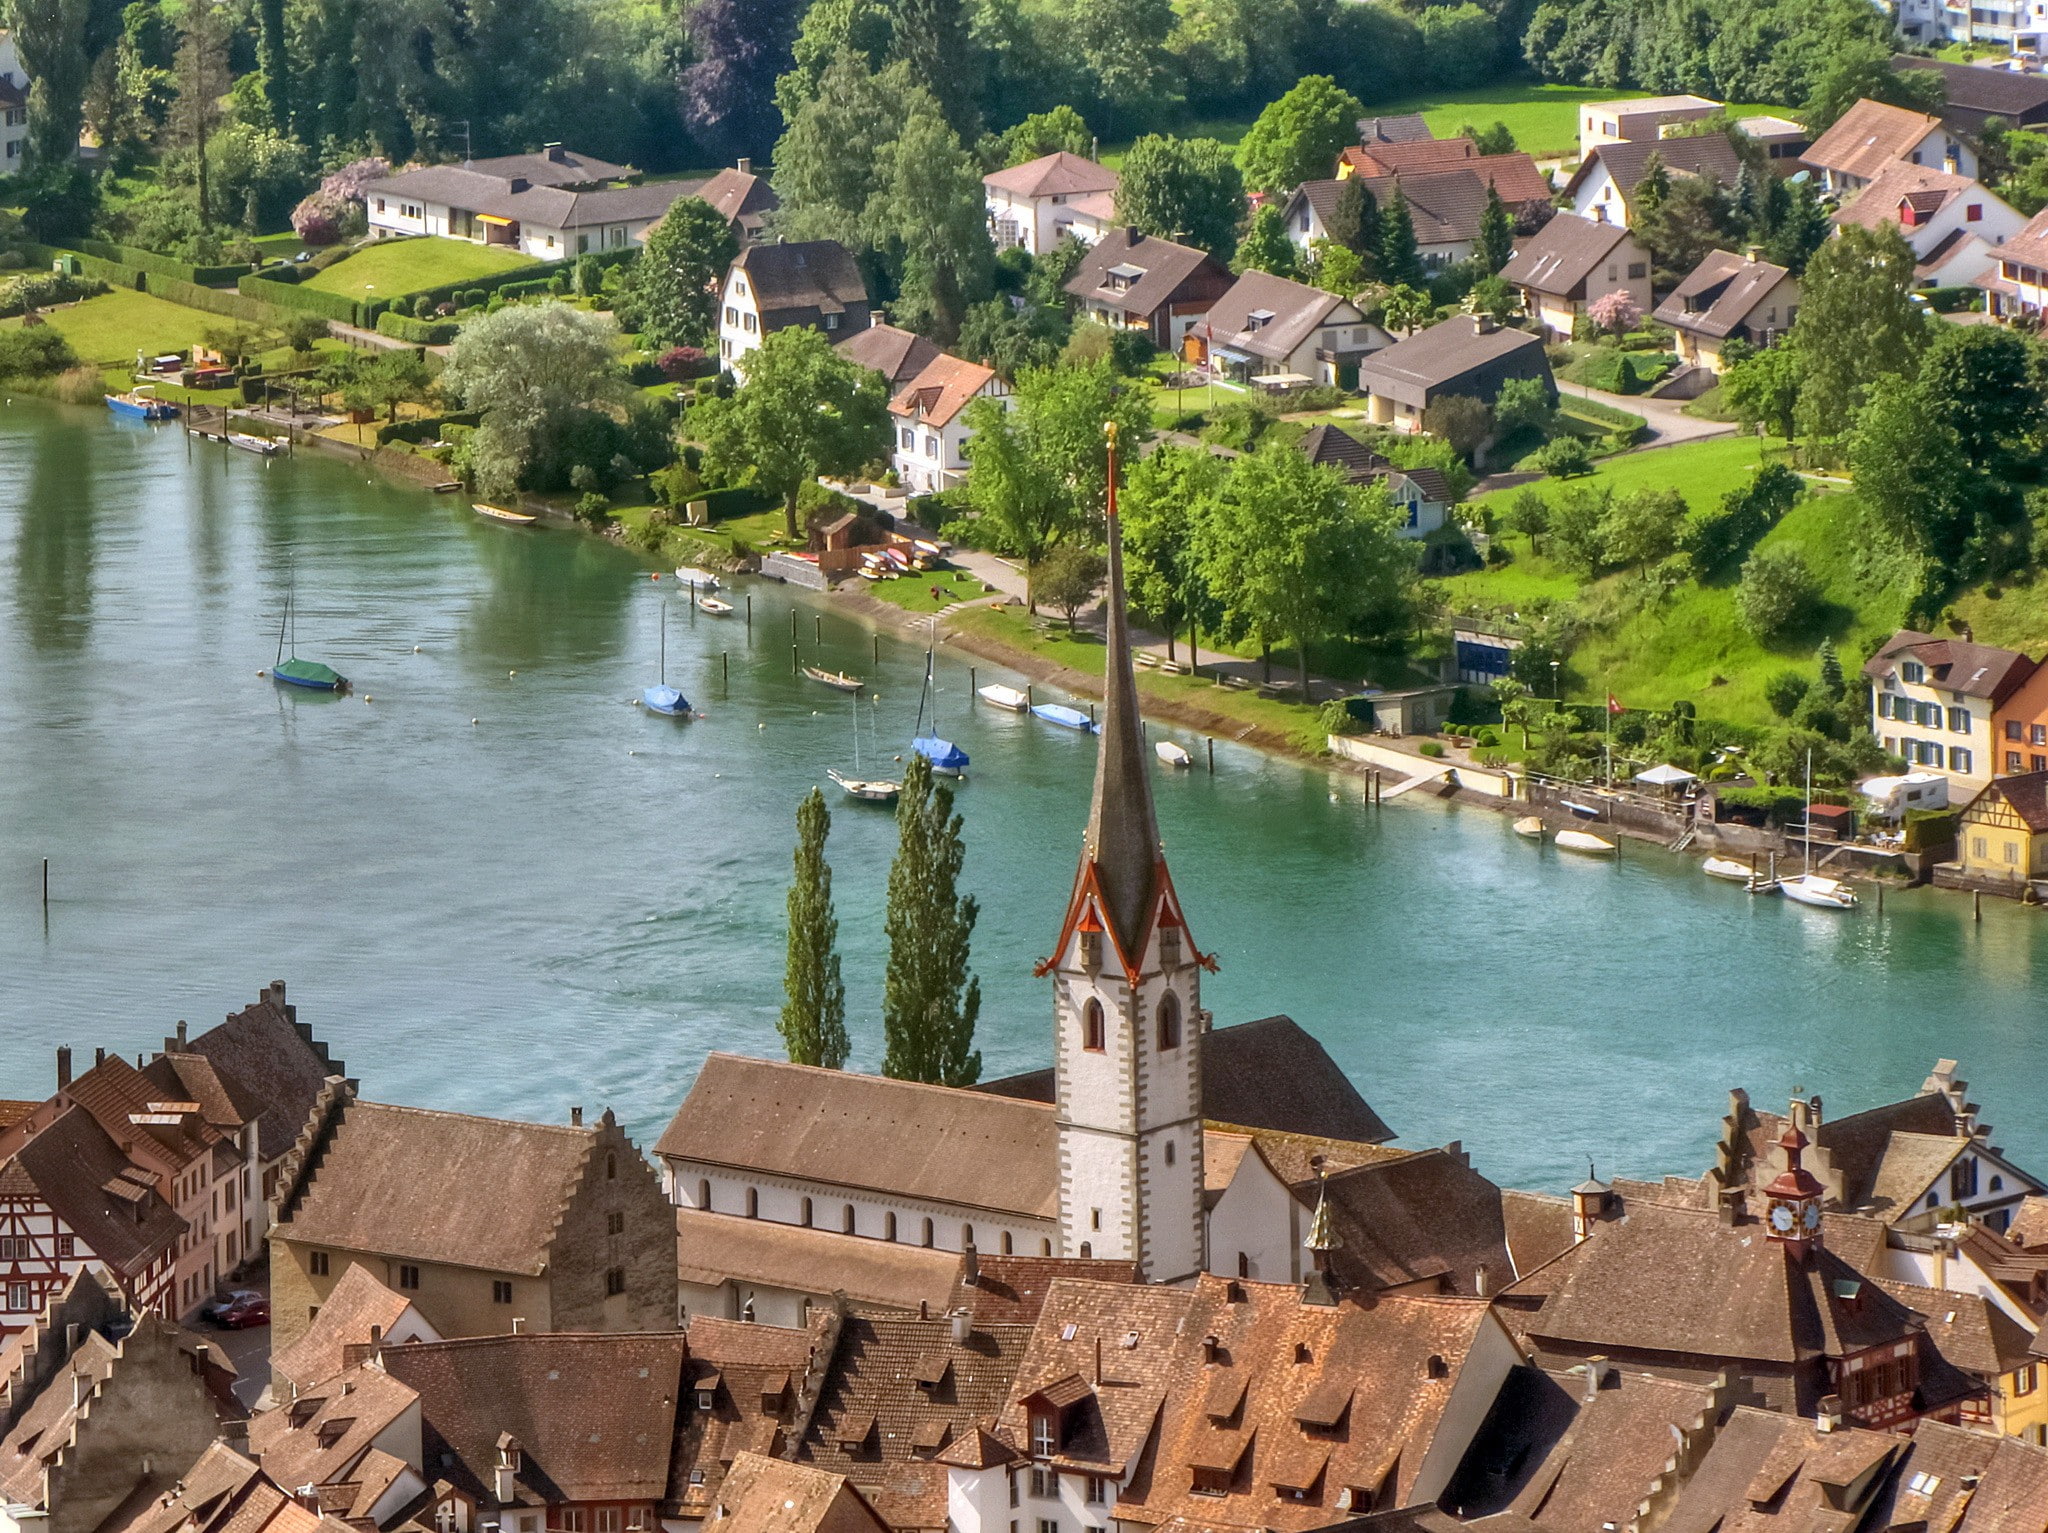 Switzerland, Stein am Rhein, home, architecture, river, town.